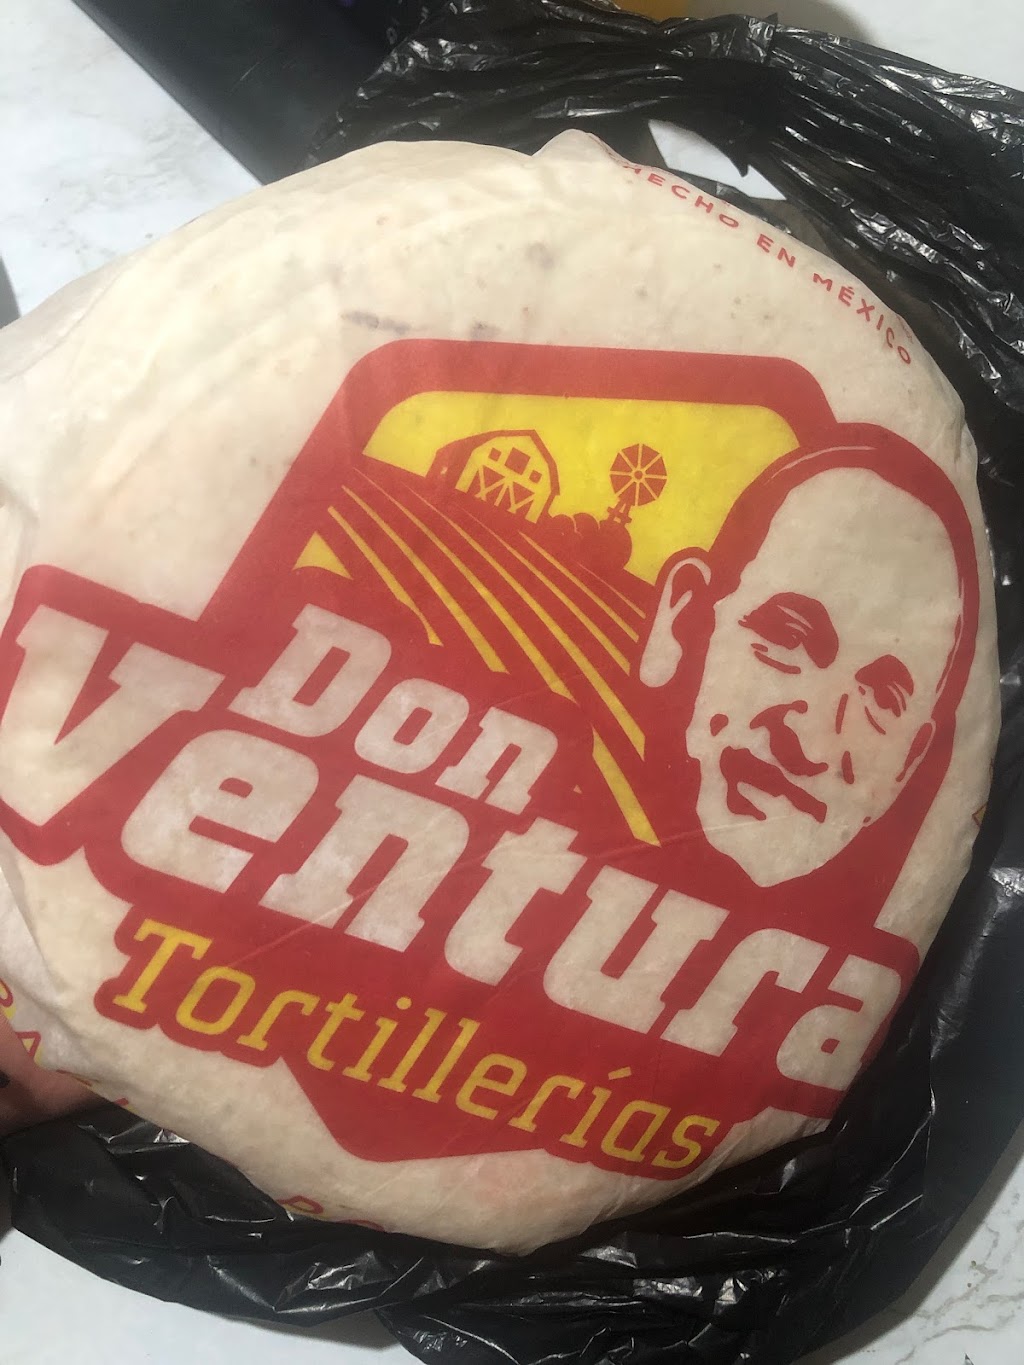 Tortillería Don Ventura | De la Infancia, El Niño, 22330 El Niño, B.C., Mexico | Phone: 664 783 7447